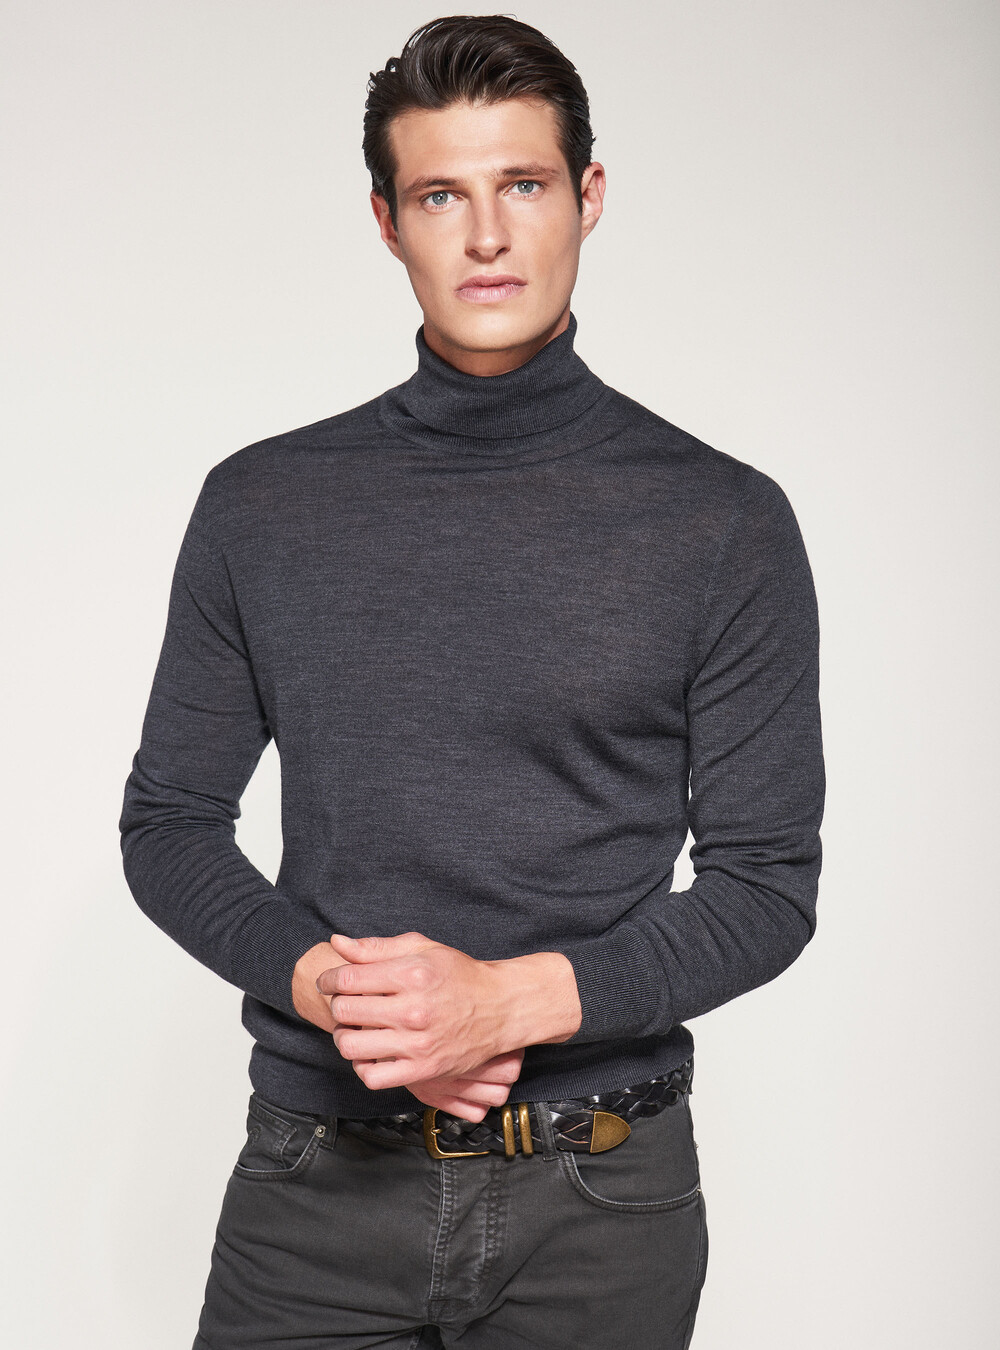 Merino wool turtleneck | GutteridgeUS | Men's Sweaters